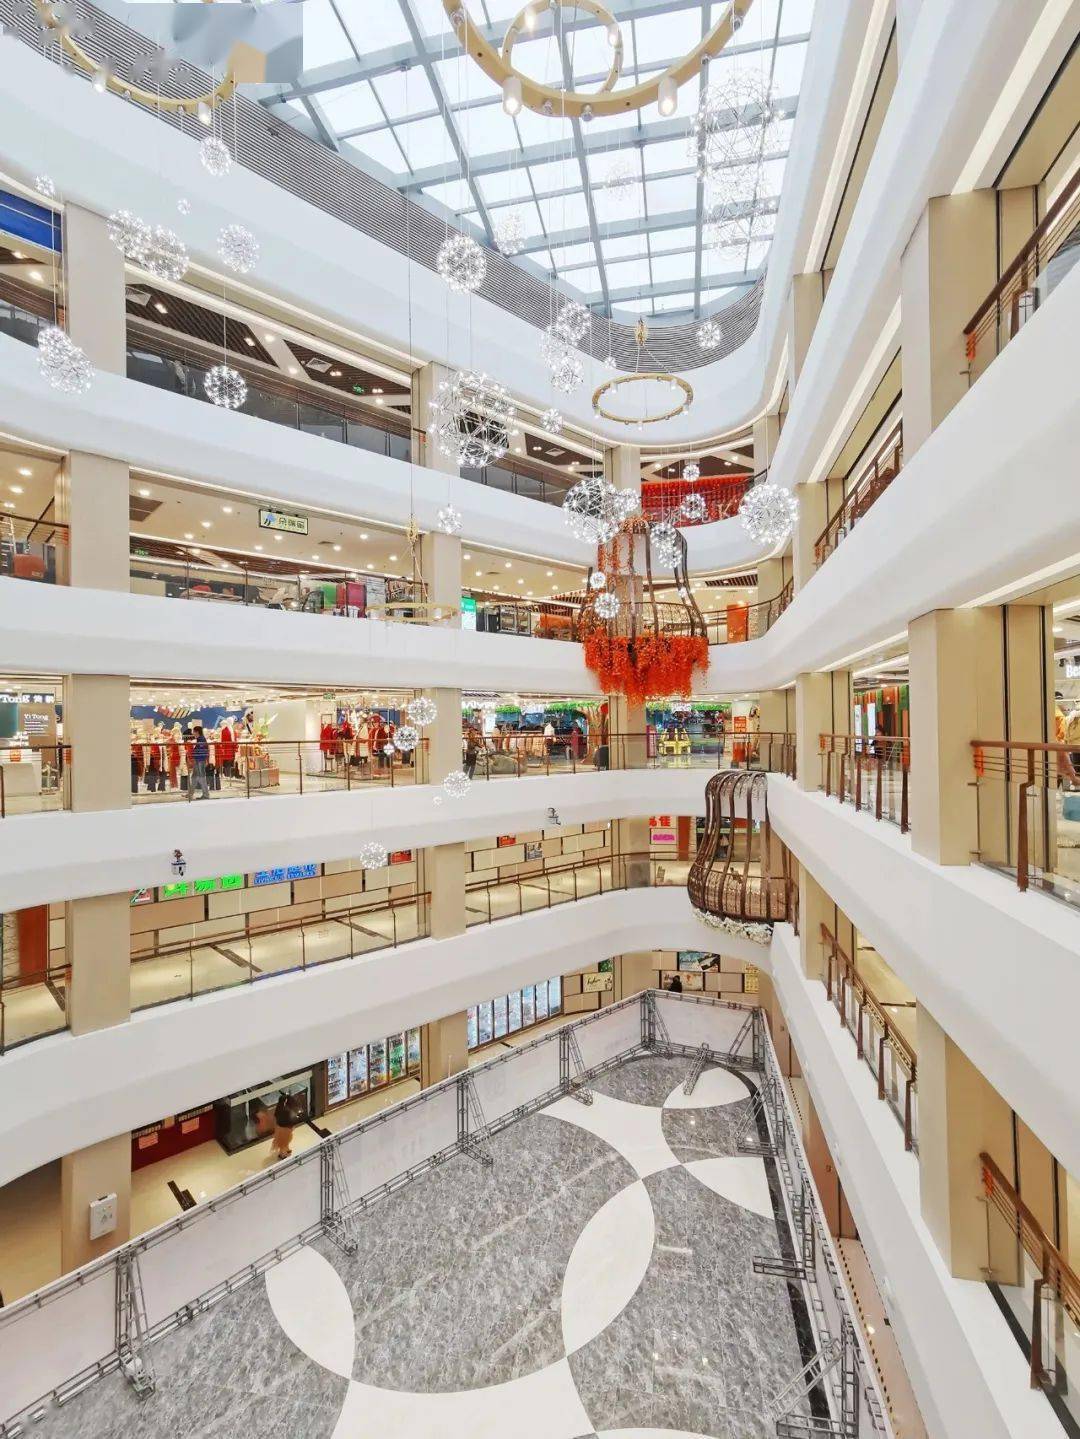 和购物广场位于汕头市朝阳区西胪镇, 是西胪镇首开的,唯一的购物中心